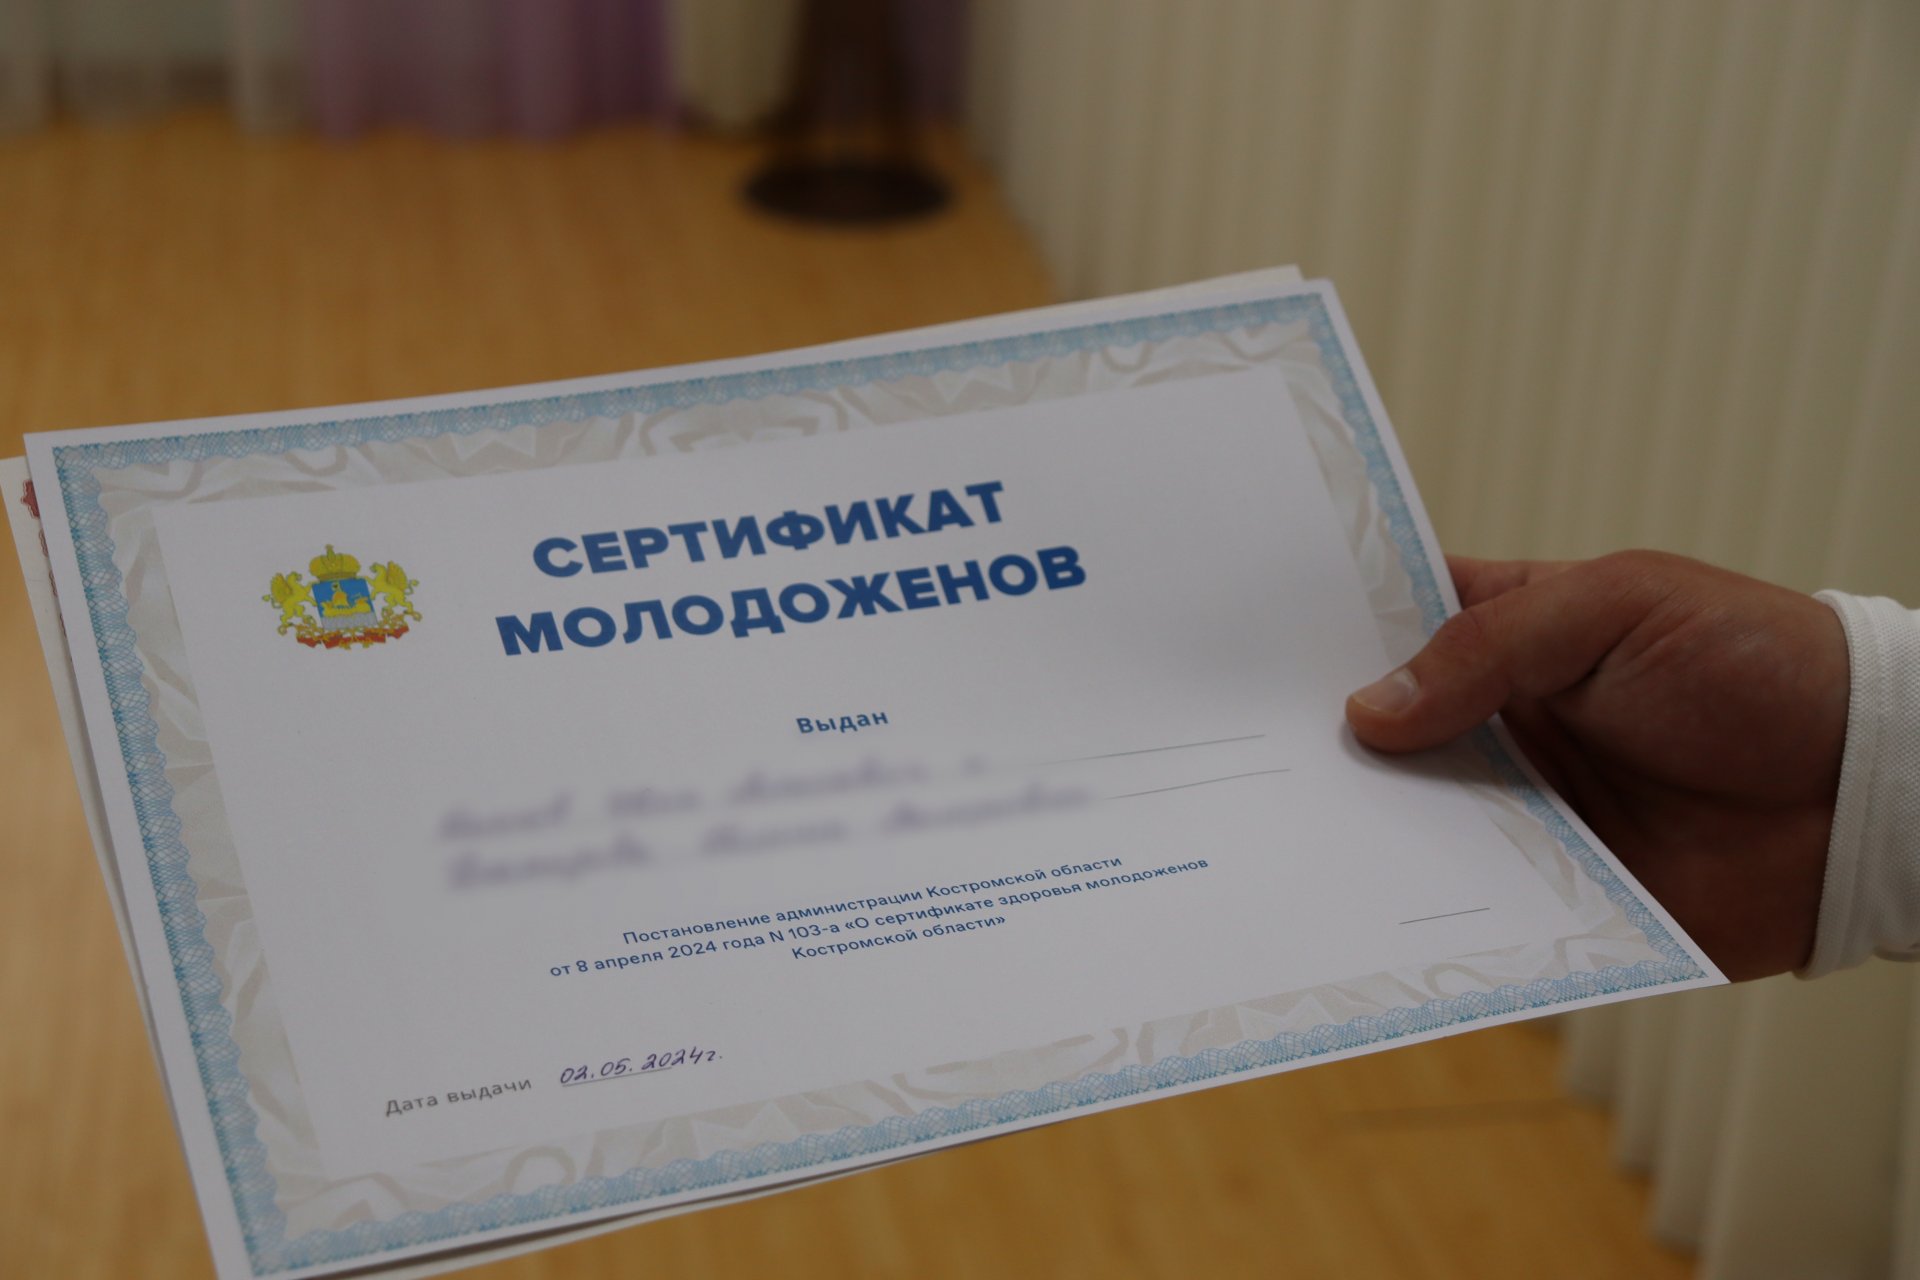 «Очень хорошая мера поддержки, важная и нужная сегодня». В Костромской области начали вручать Сертификаты молодоженов